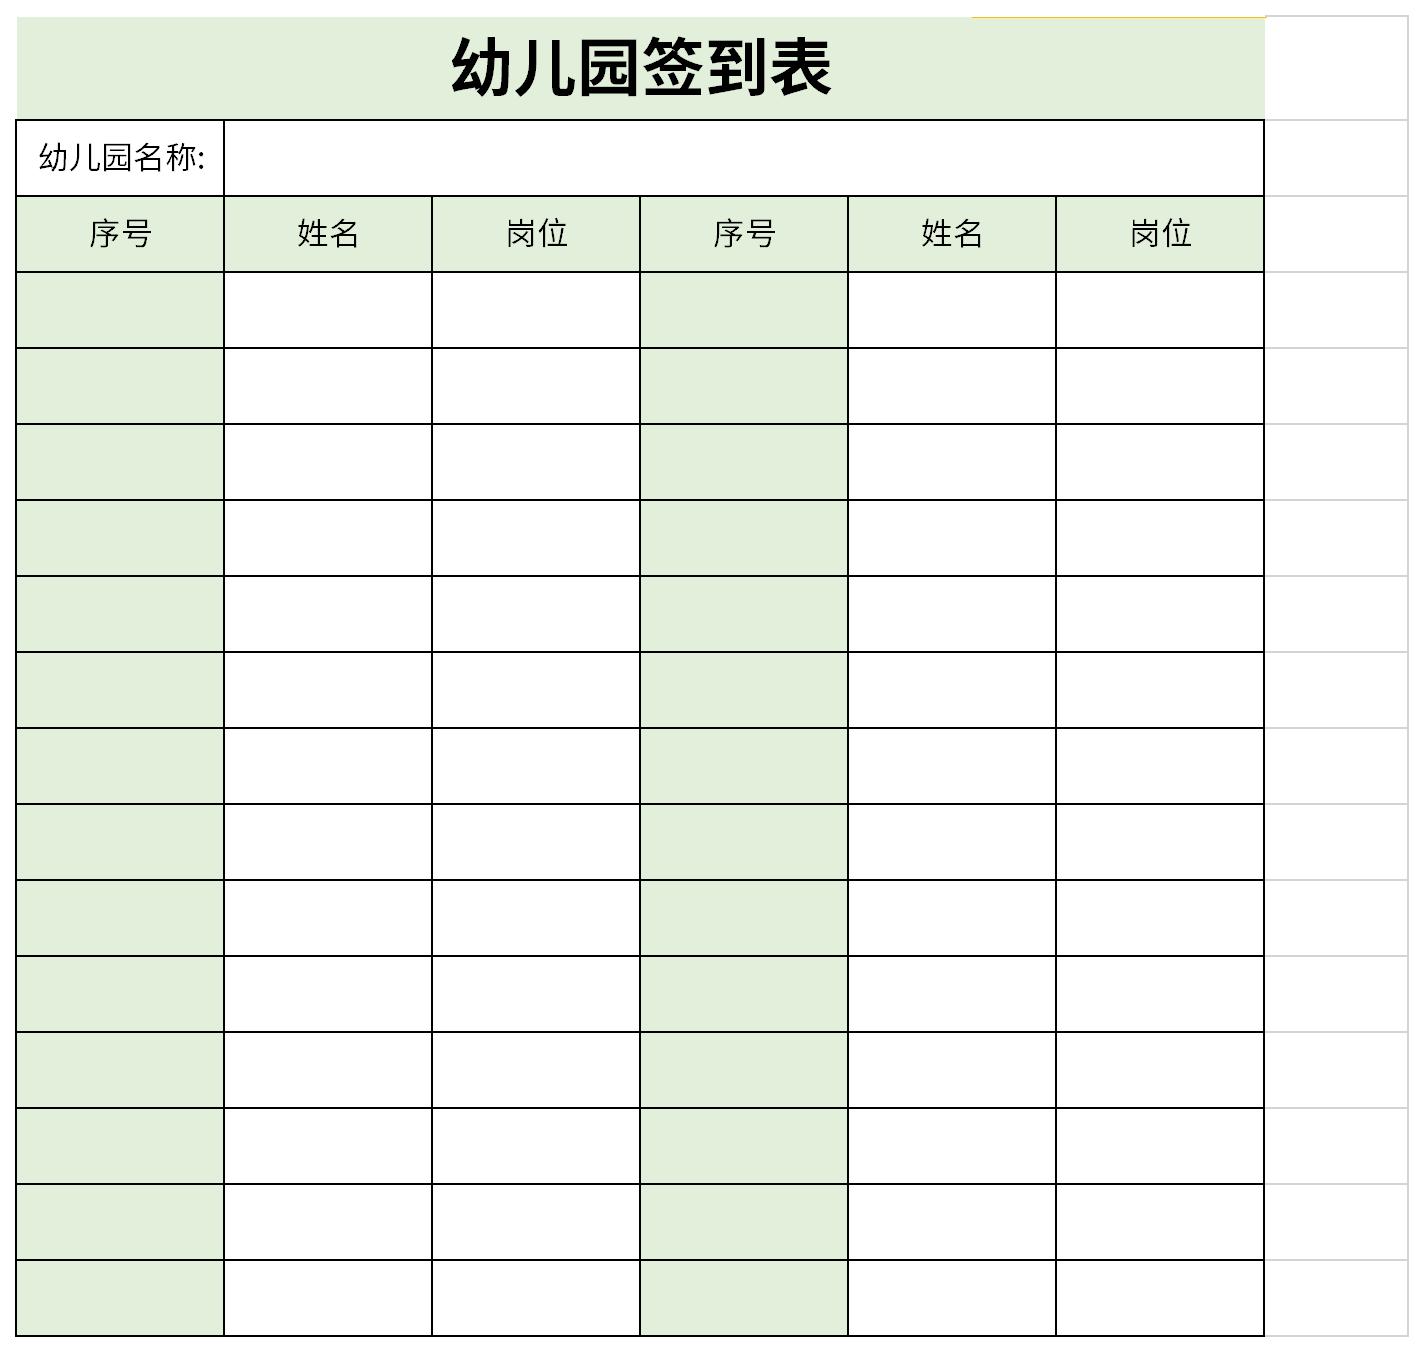 党员大会签到表表格免费下载_党员大会签到表Excel模板下载-华军软件园